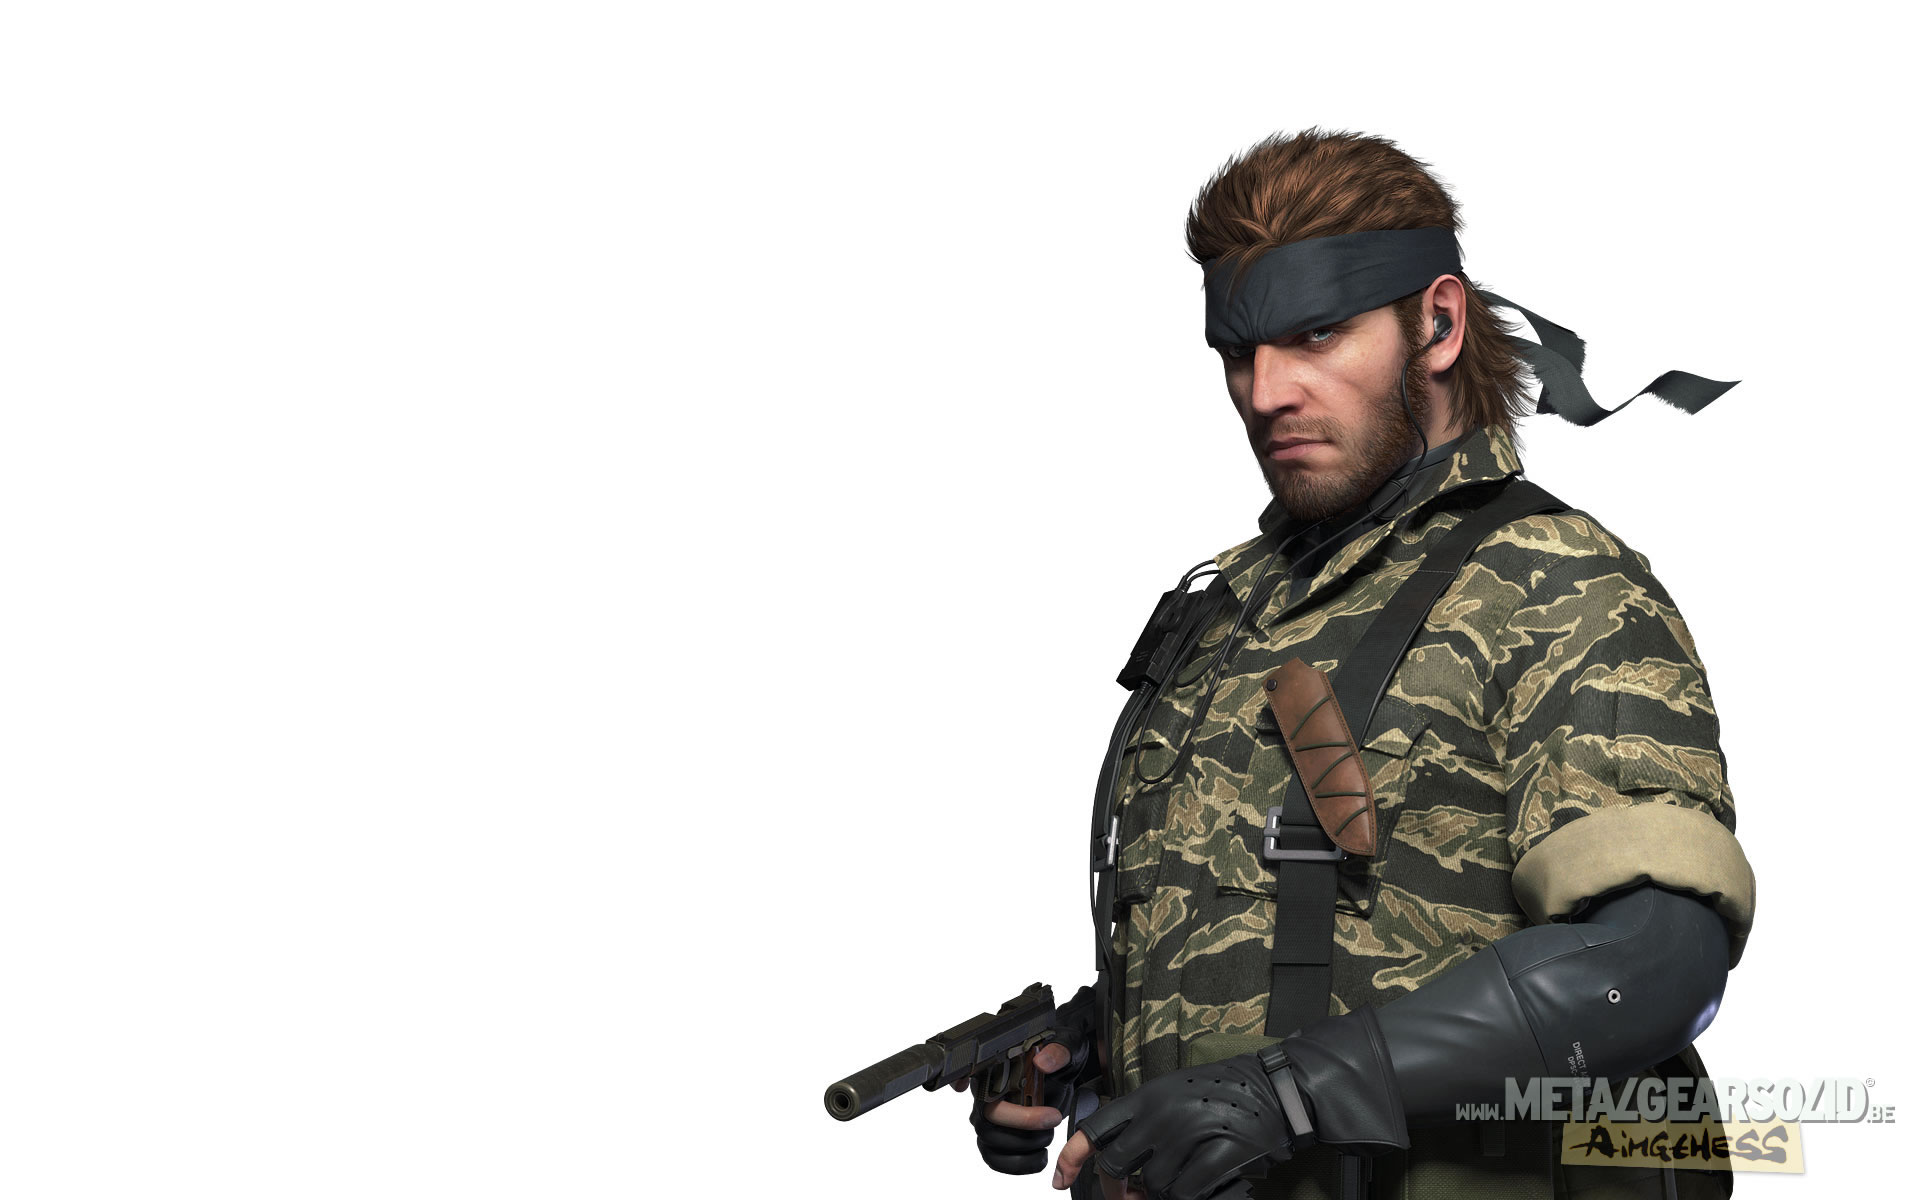 Les personnages en images de Metal Gear Solid 3 sur Pachinko